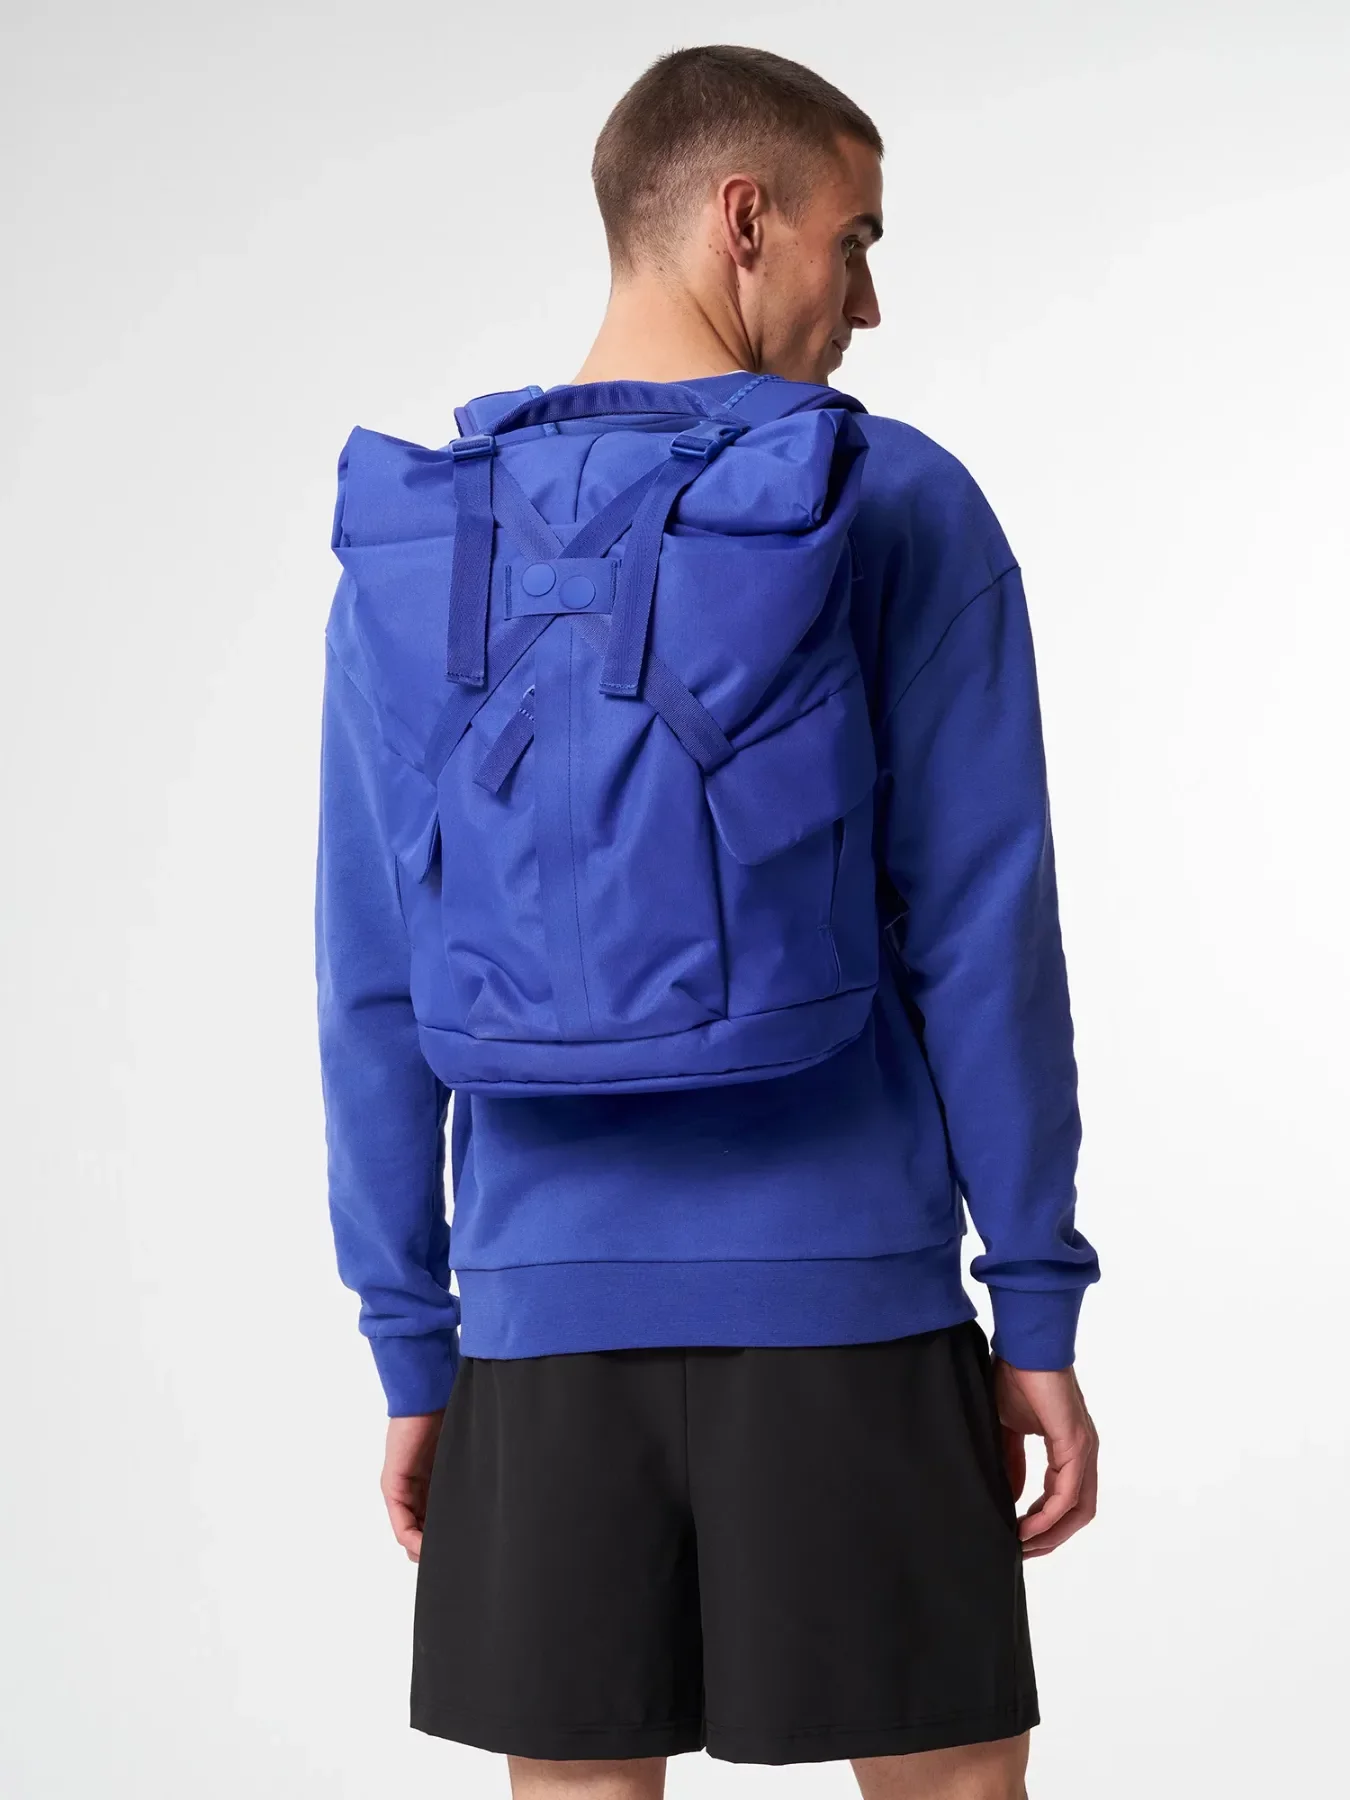 pinqponq Backpack KROSS - Poppy Blue 9